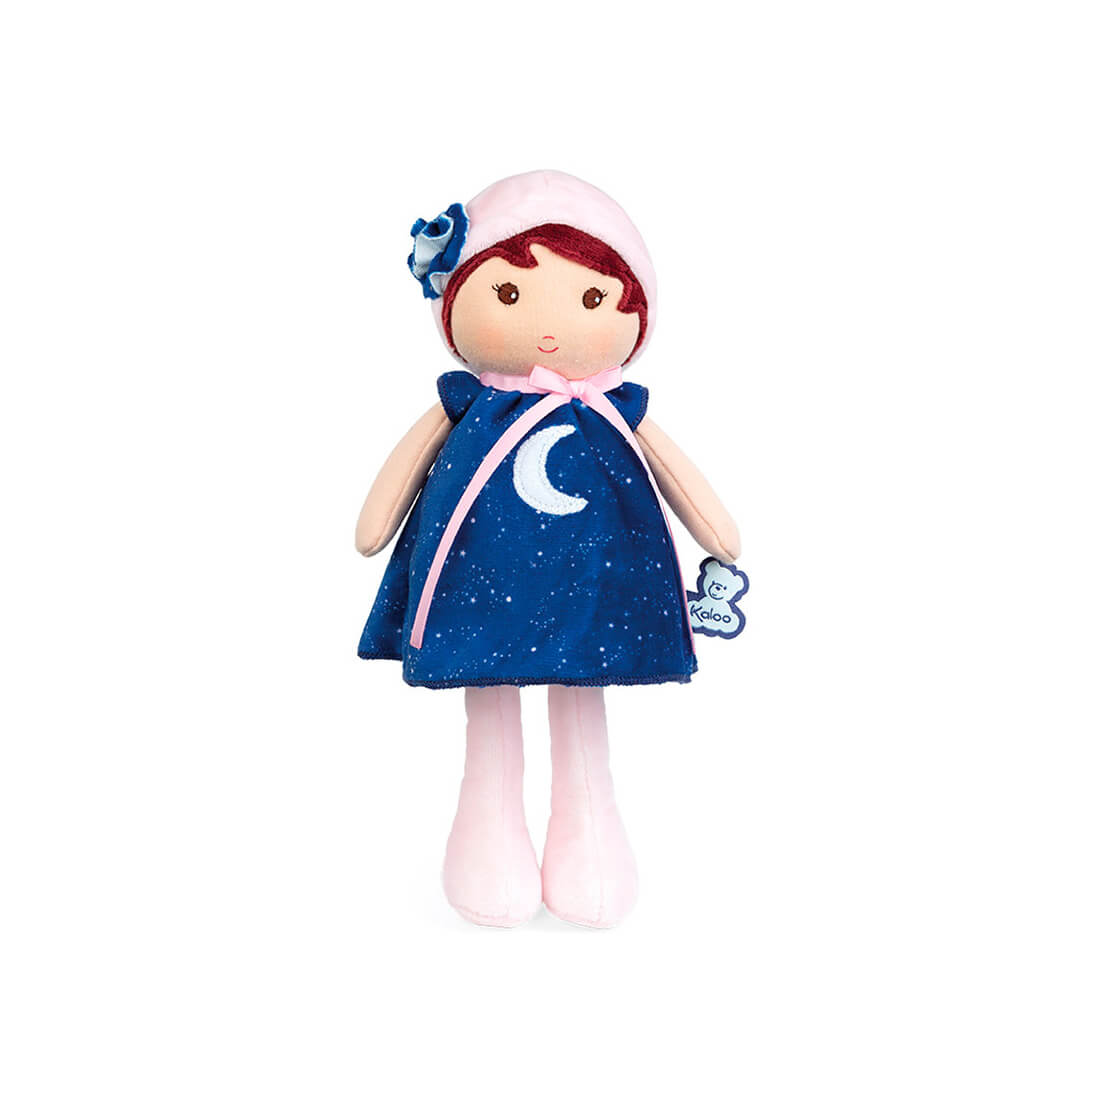 Текстильная кукла Kaloo "Aurore", в синем платье, серия "Tendresse de Kaloo", 25 см